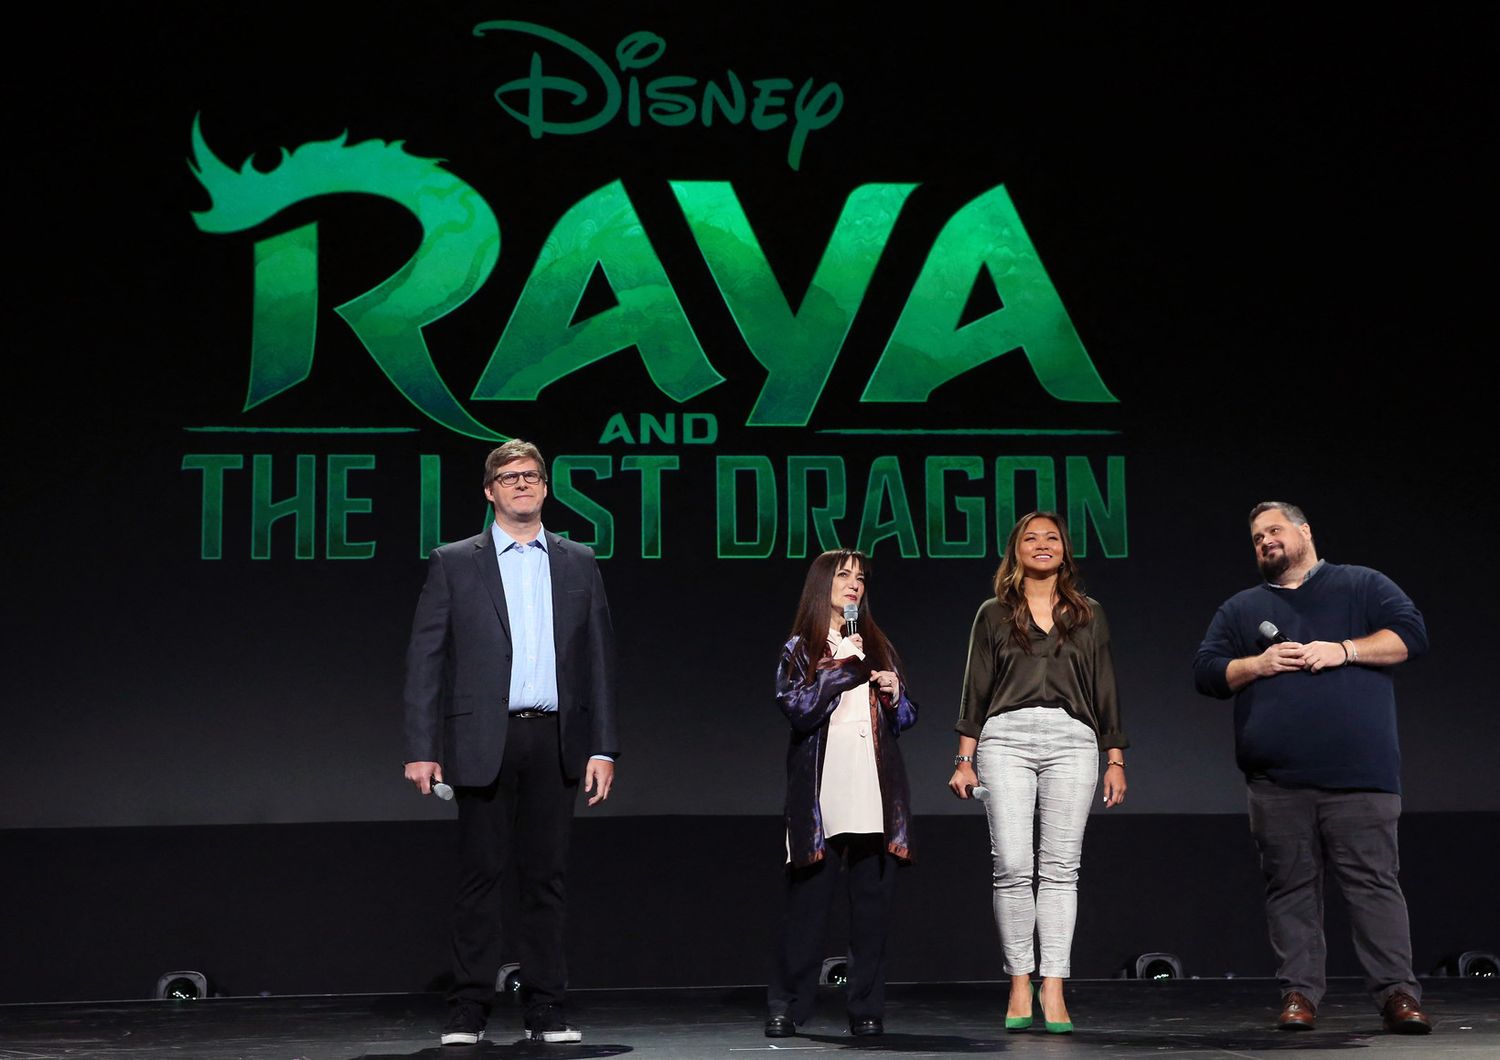 Un momento della presentazione del nuovo film Disney ad Anaheim, in California